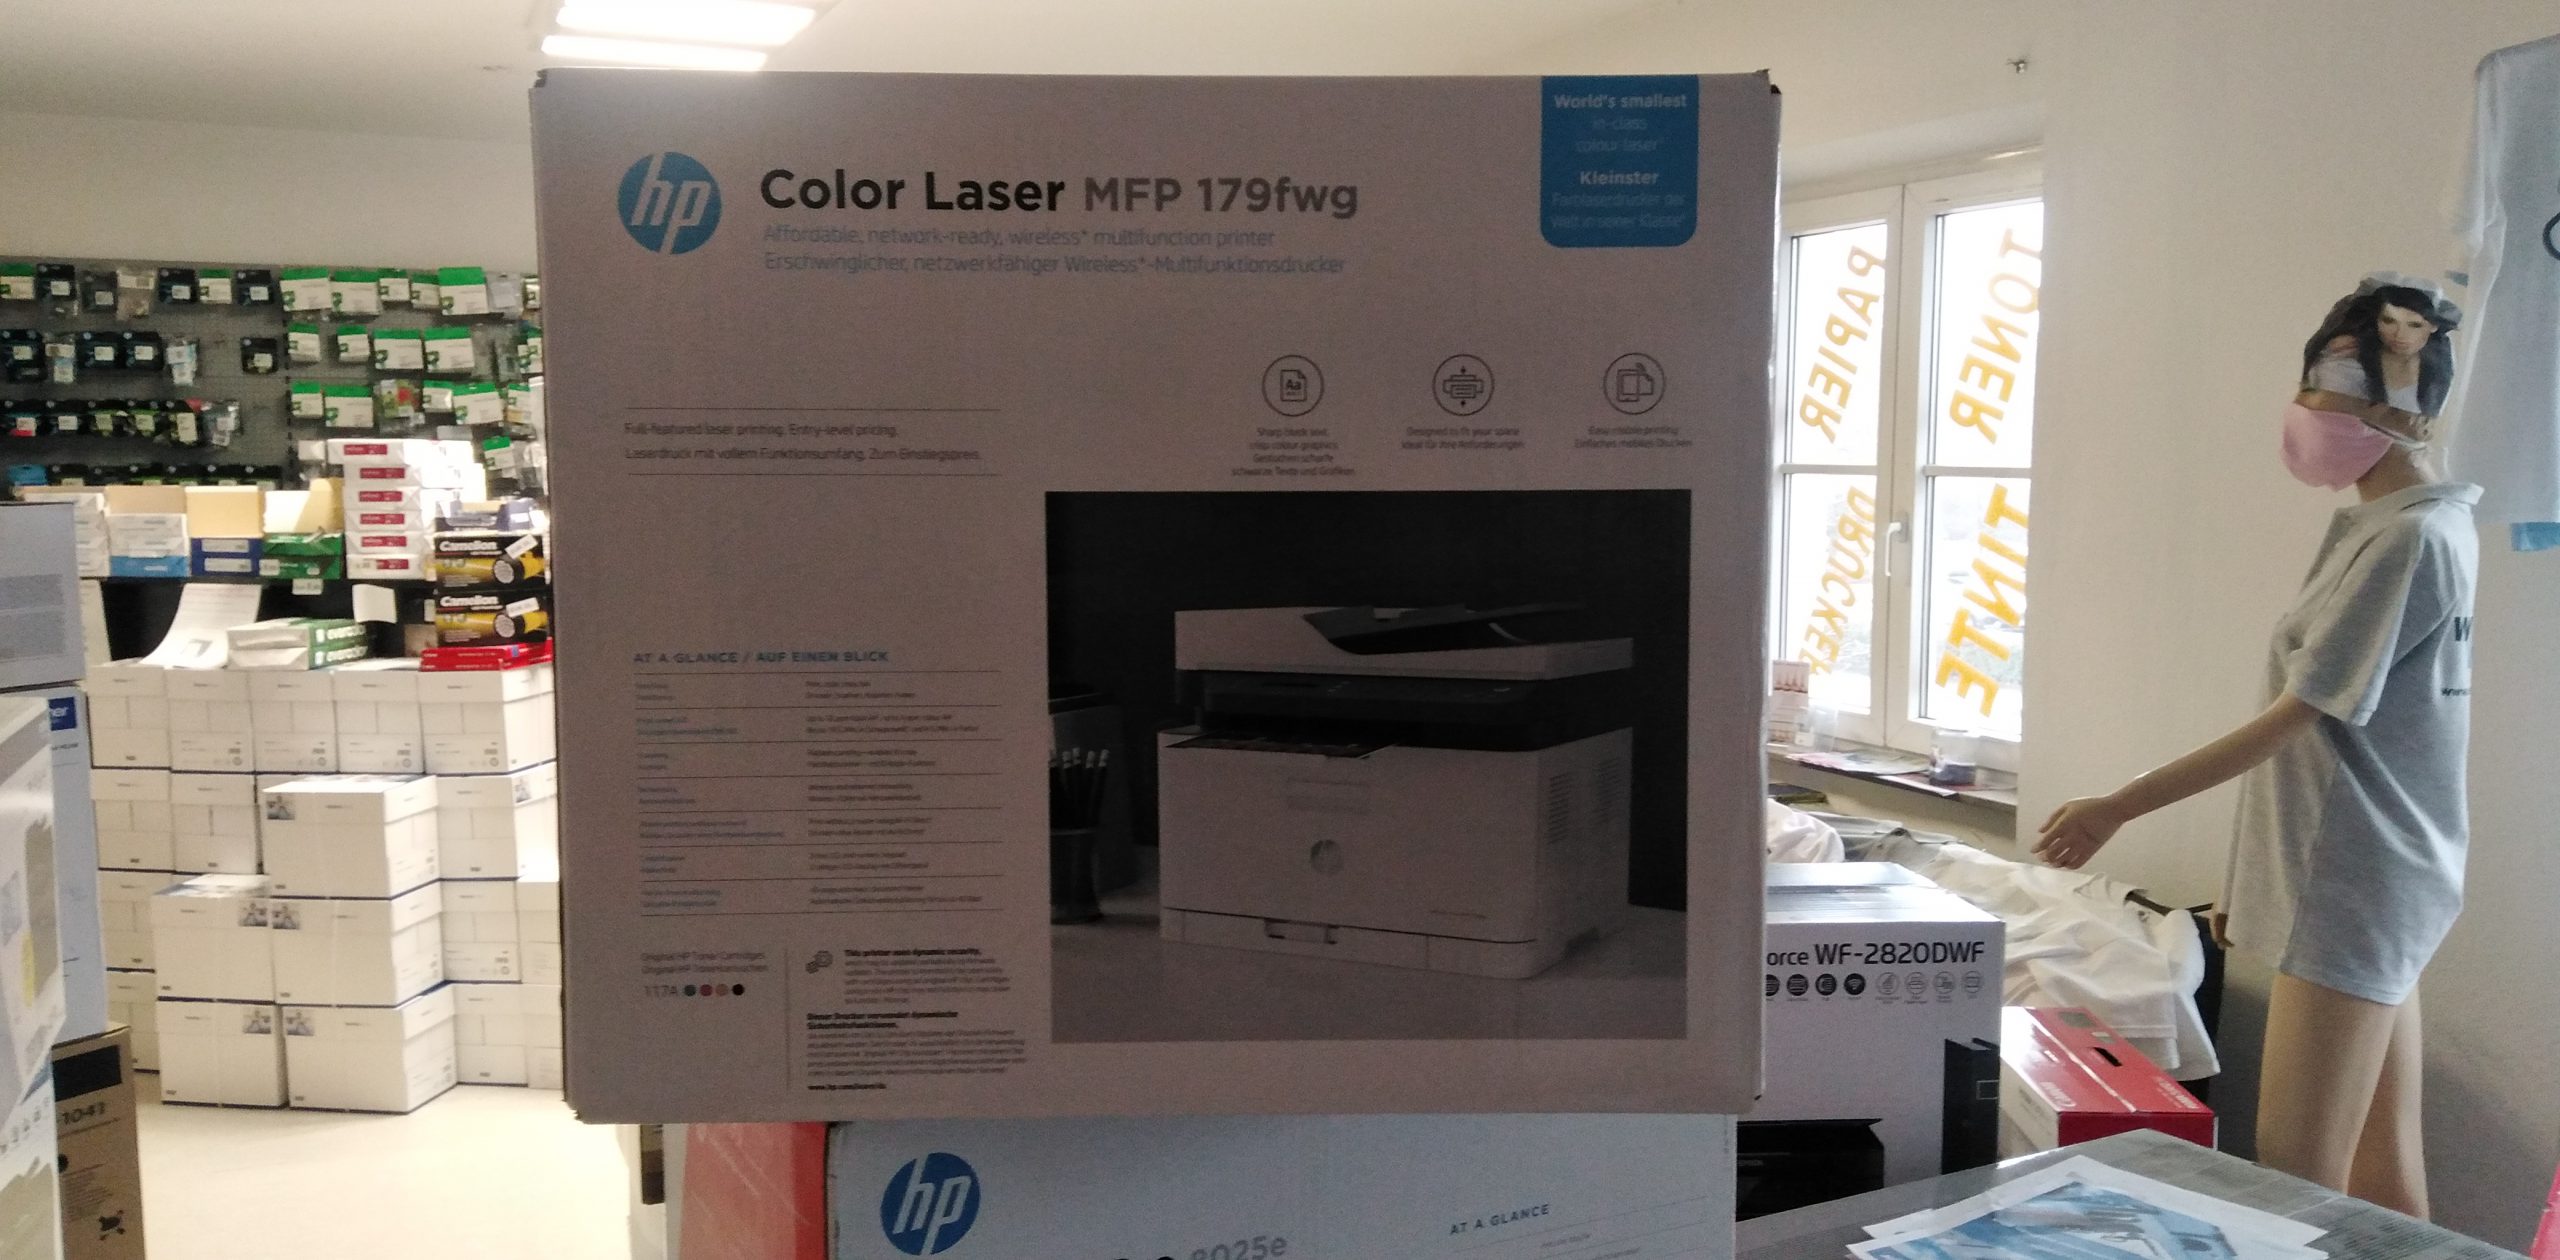 HP Color Laser MFP 179fwg